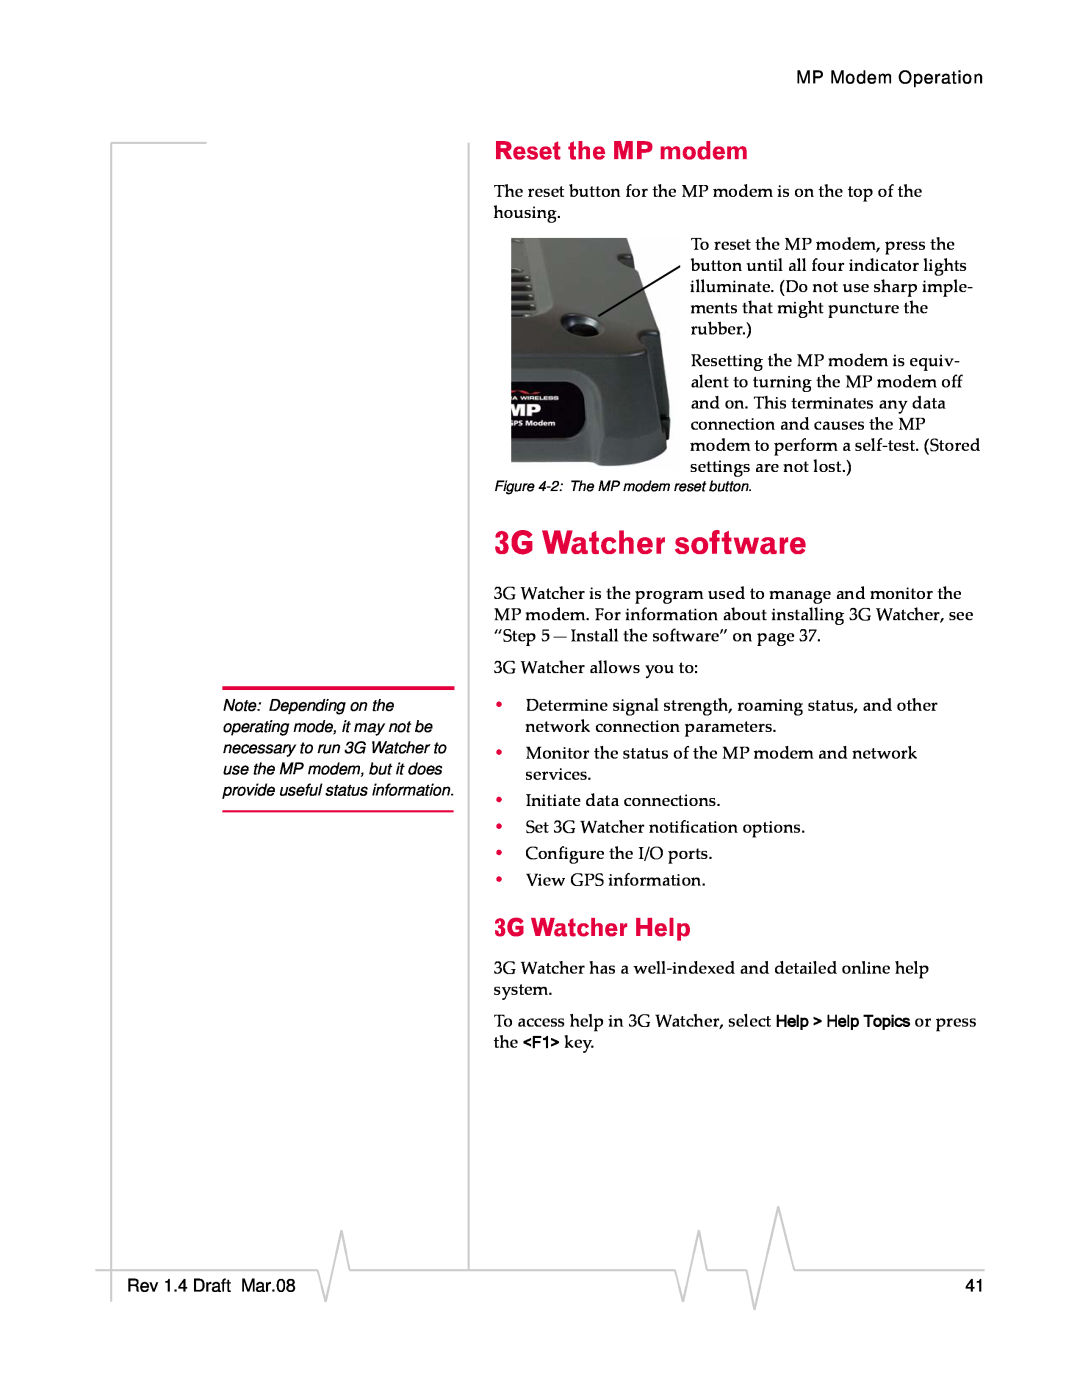 Sierra Wireless MP595W manual 3G Watcher software, Reset the MP modem, 3G Watcher Help 